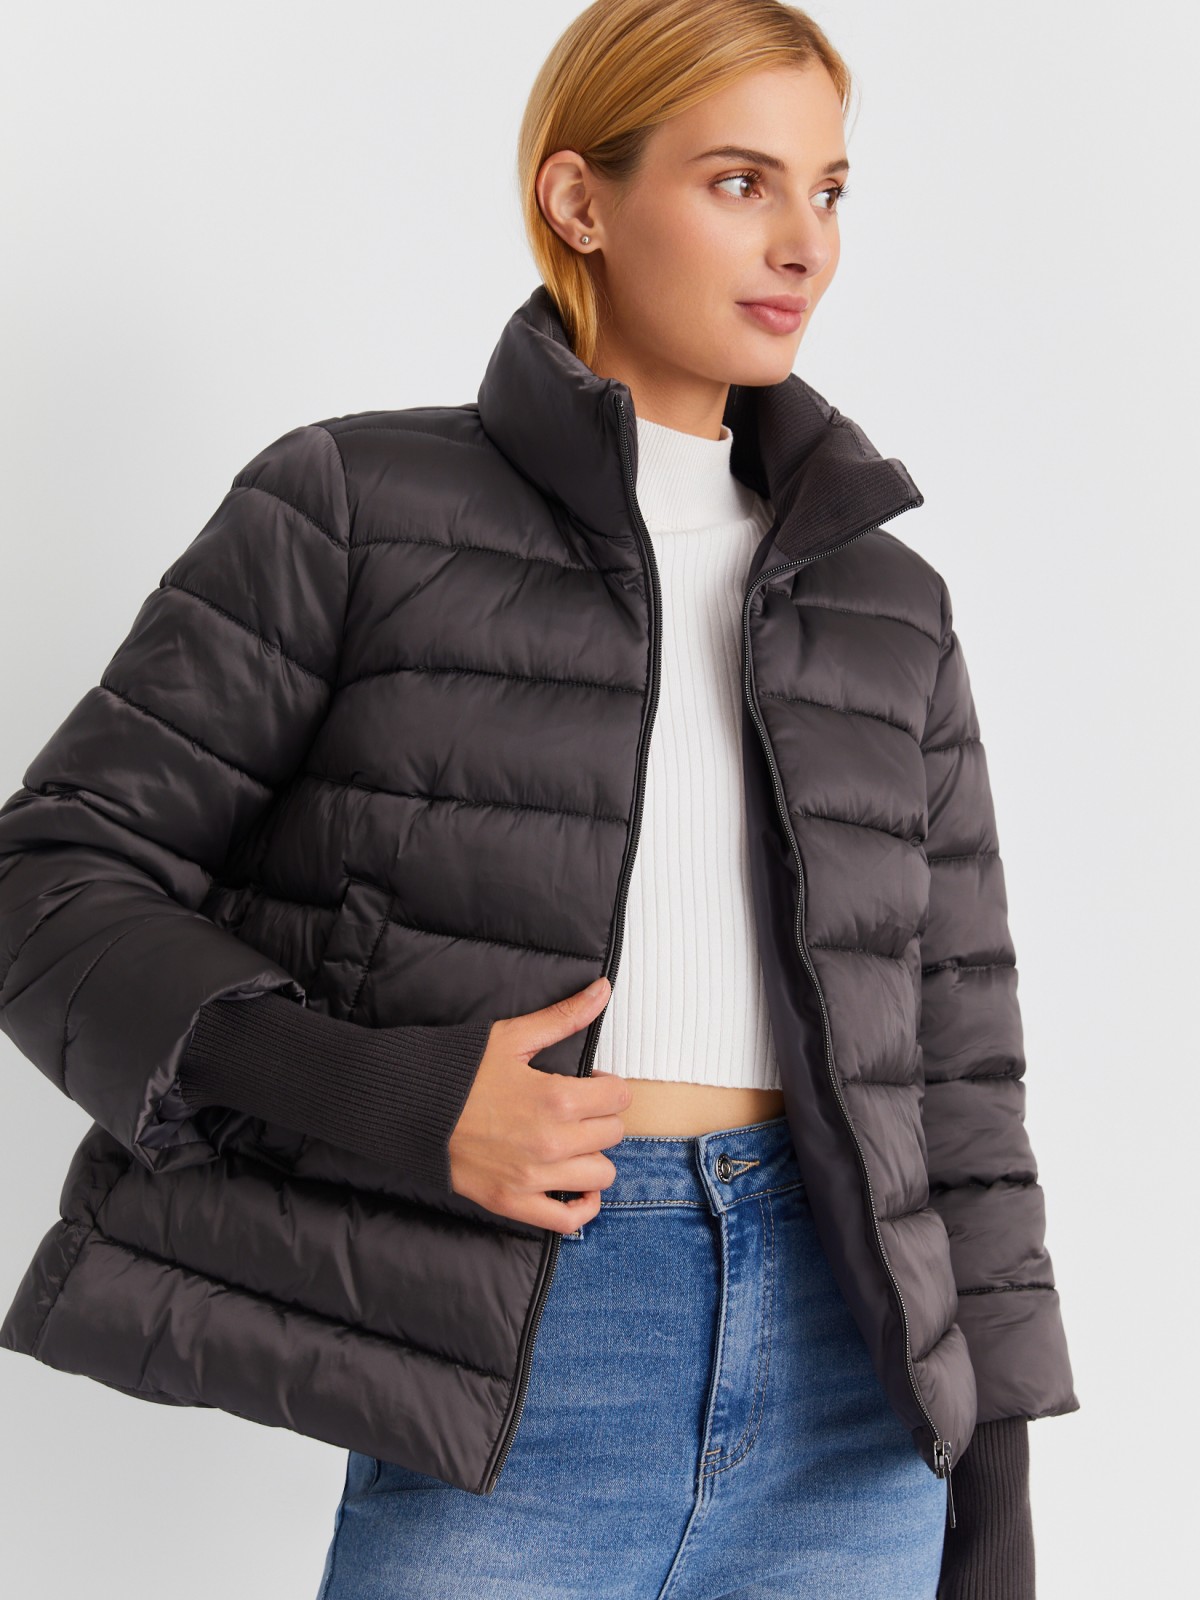 Тёплая укороченная куртка с воротником-стойкой и трикотажными манжетами zolla 023345102254, цвет темно-серый, размер XS - фото 1